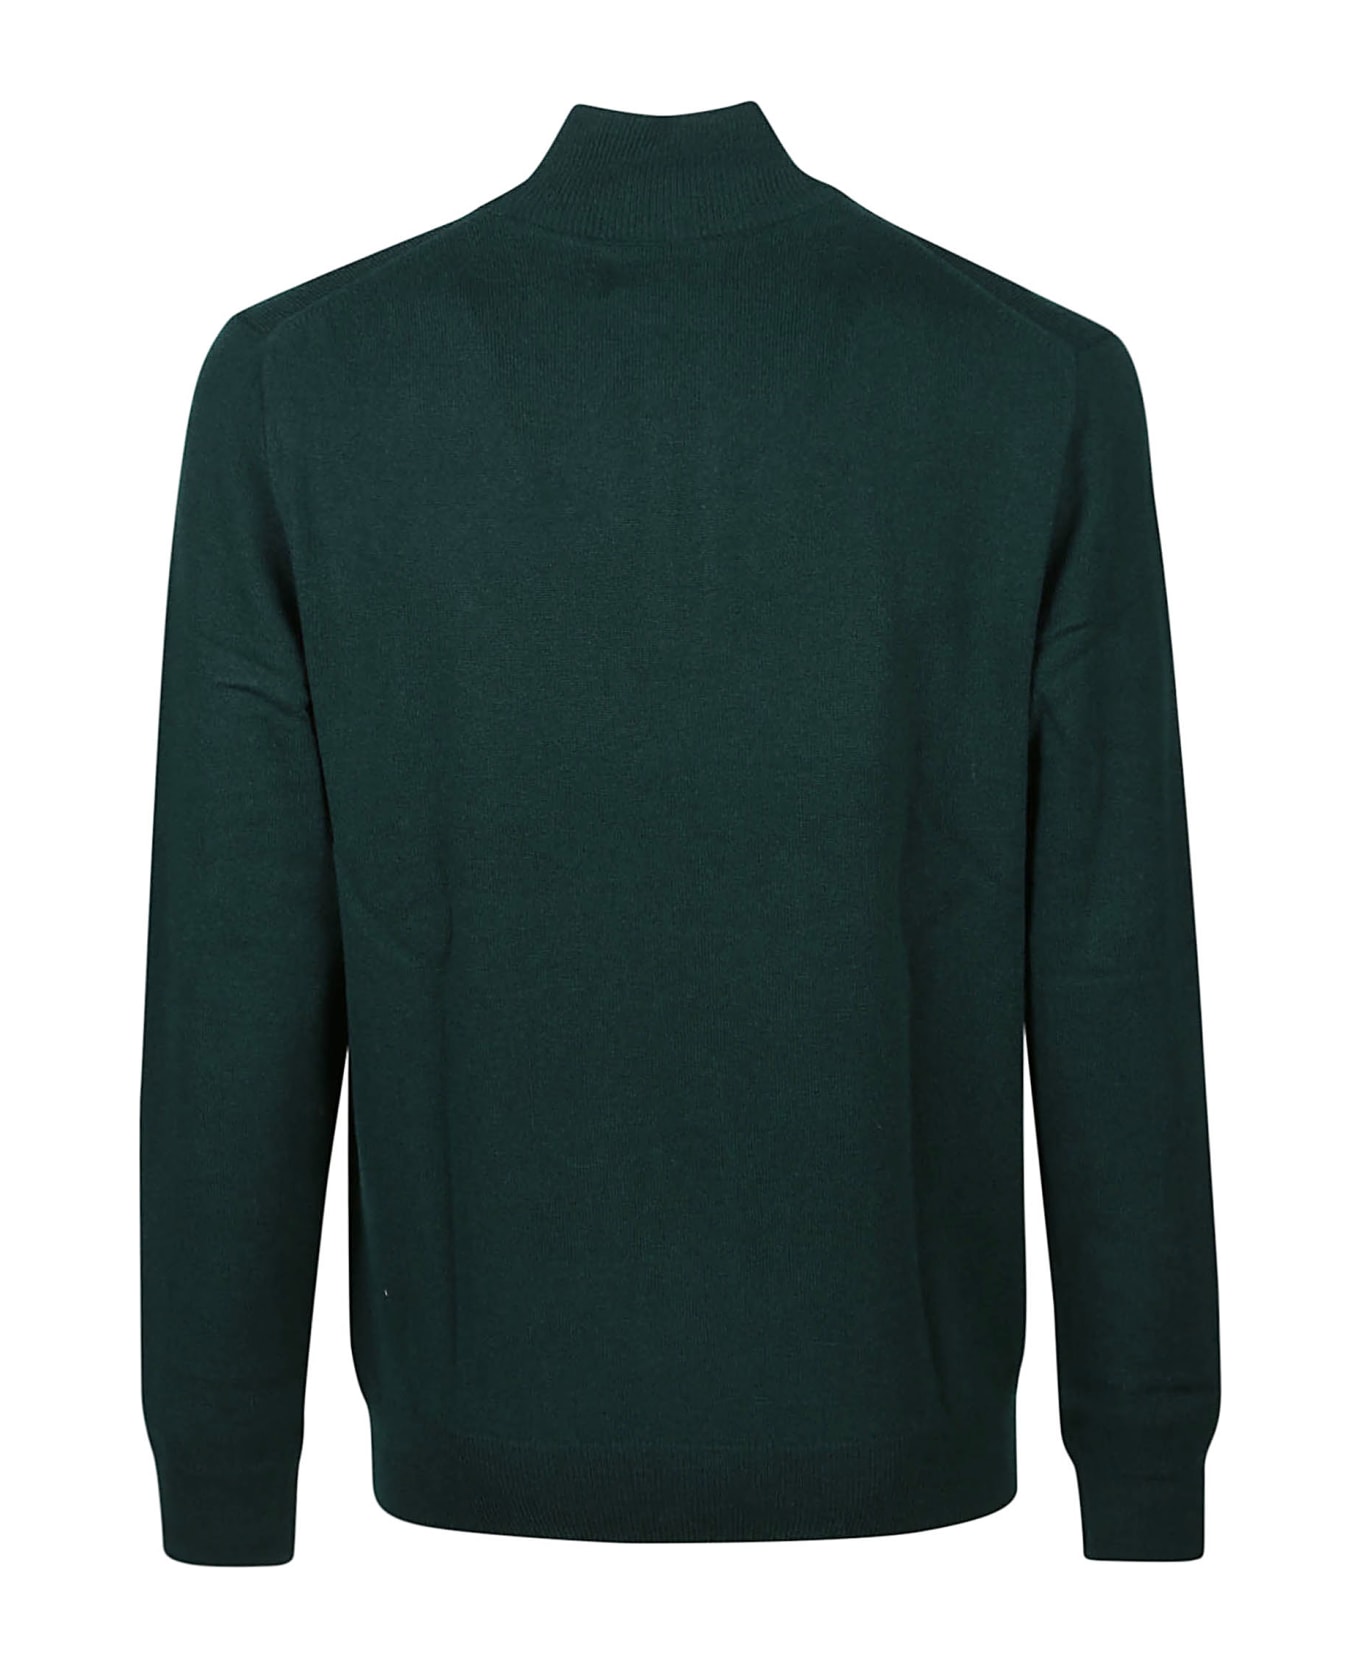 Polo Ralph Lauren Long Sleeve Half Zip Sweater - Green